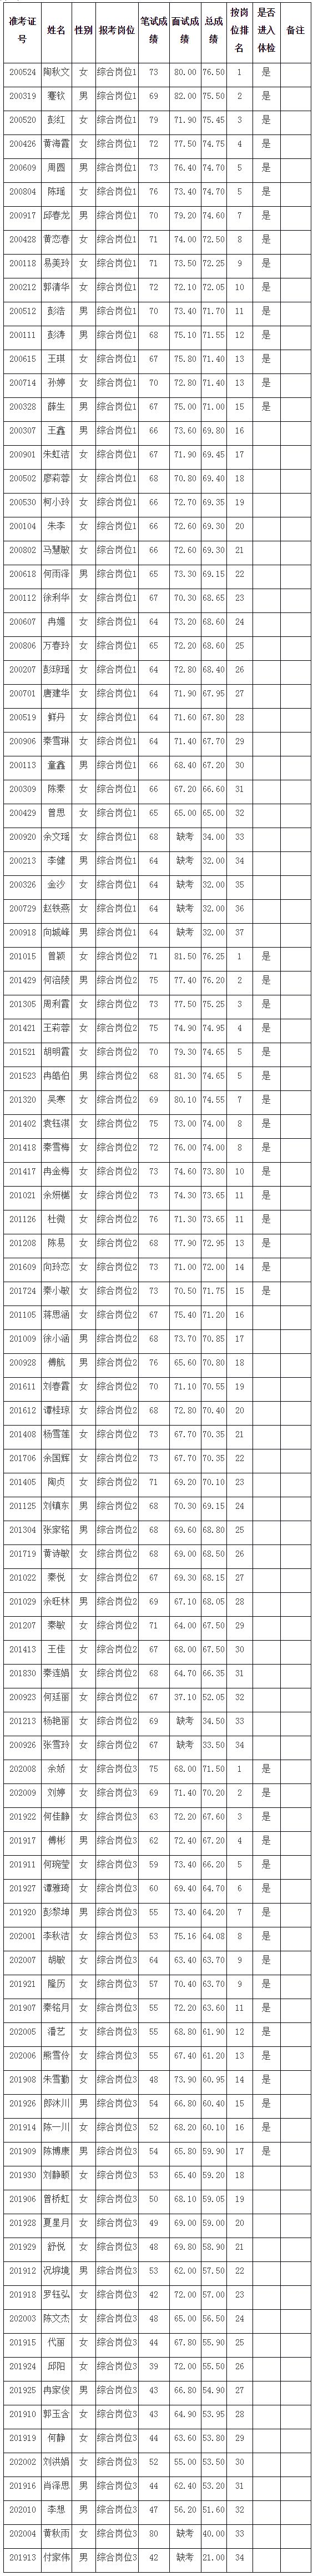 2020年丰都县行政服务中心招聘笔试面试总成绩及体检名单公示